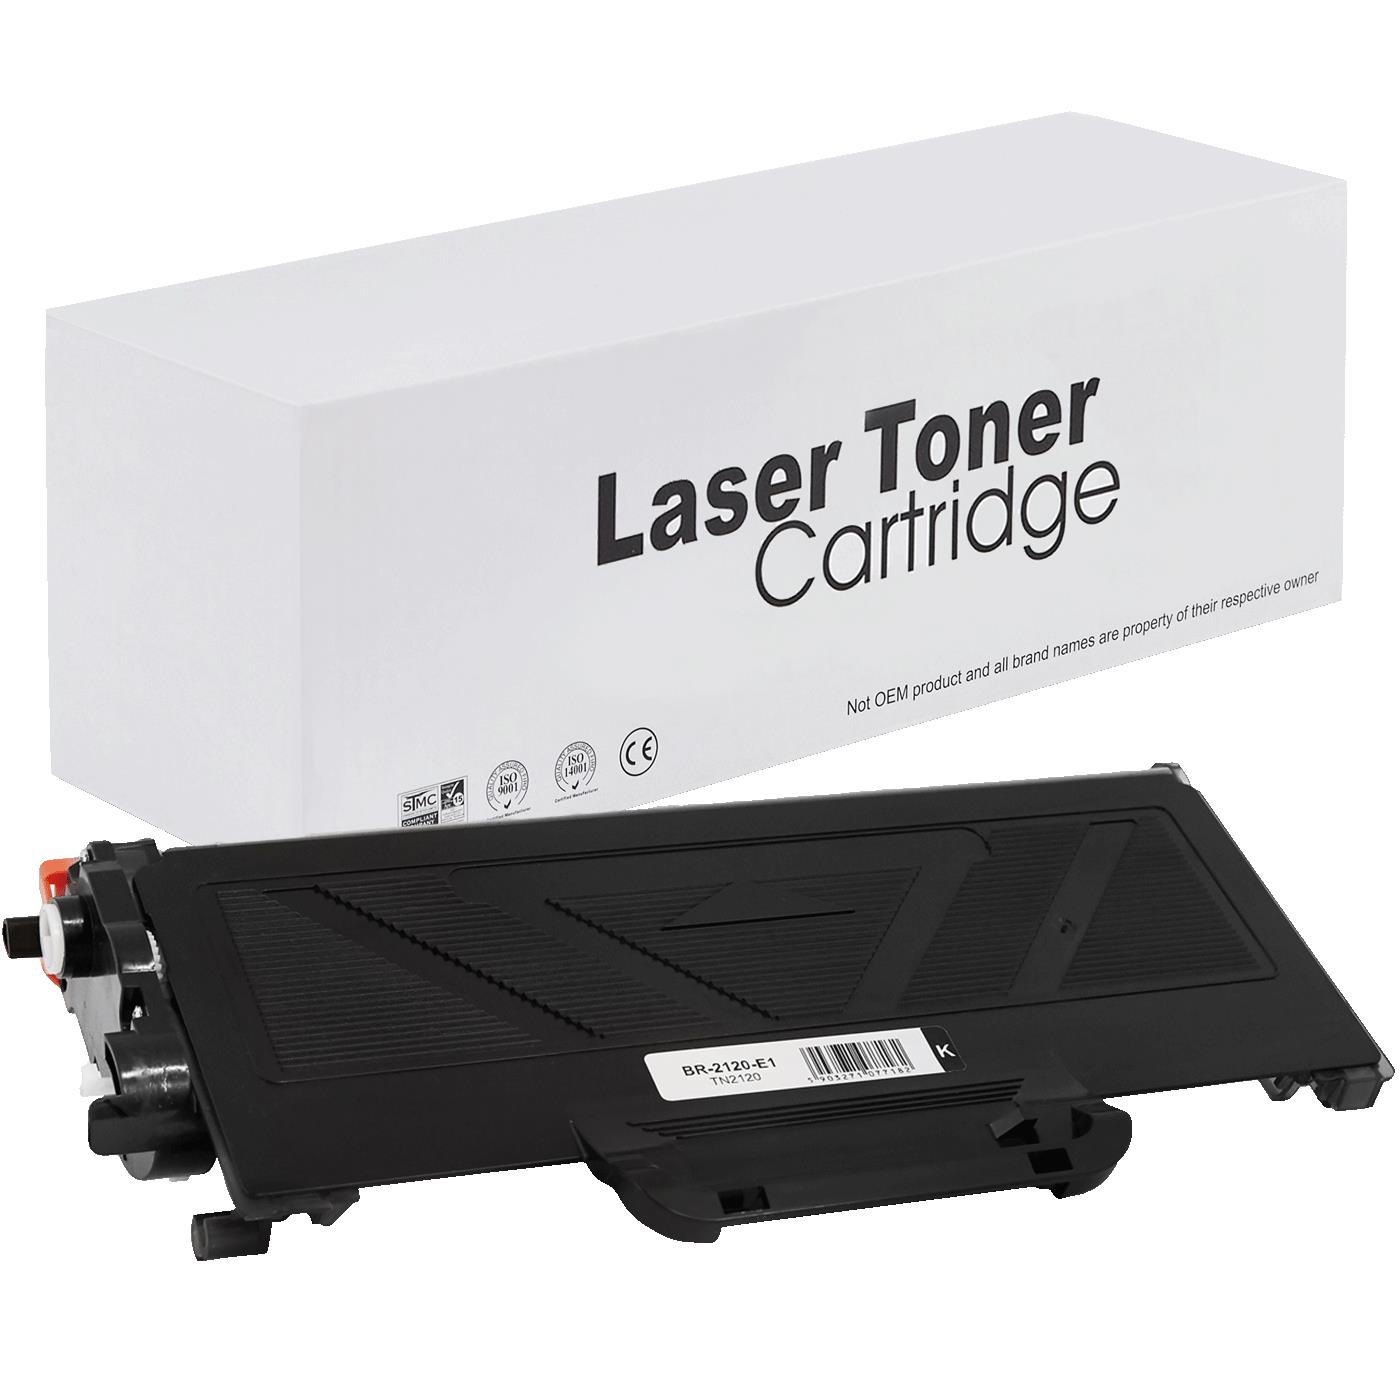 съвместима тонер касета за принтери и печатащи устройства на Brother RICOH SP 1200 Toner BR-2120 | TN2120. Ниски цени, прецизно изпълнение, високо качество.